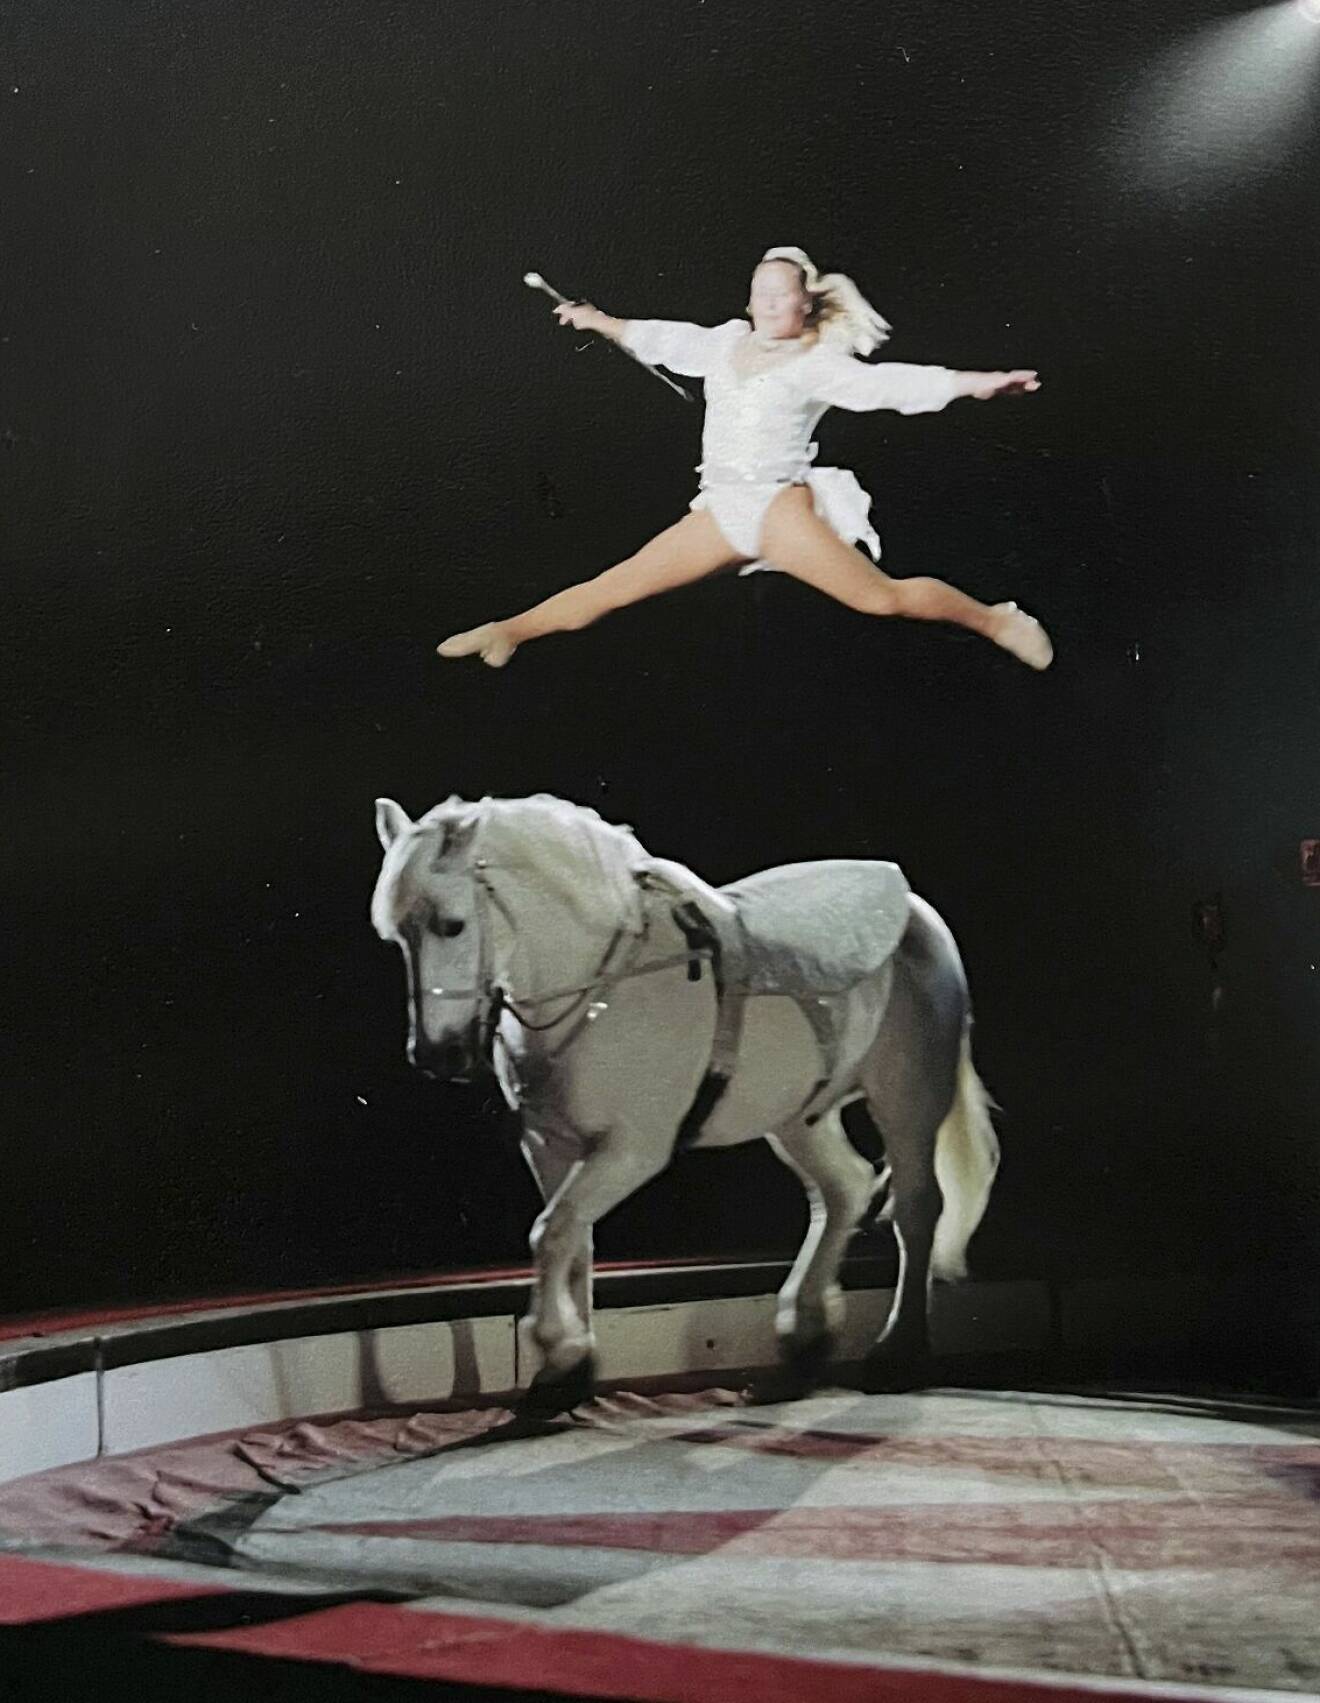 Susanne gör ett nummer med häst i manegen och har hoppat upp i luften och sträcker fram ena benet och sträcker det andra bakåt